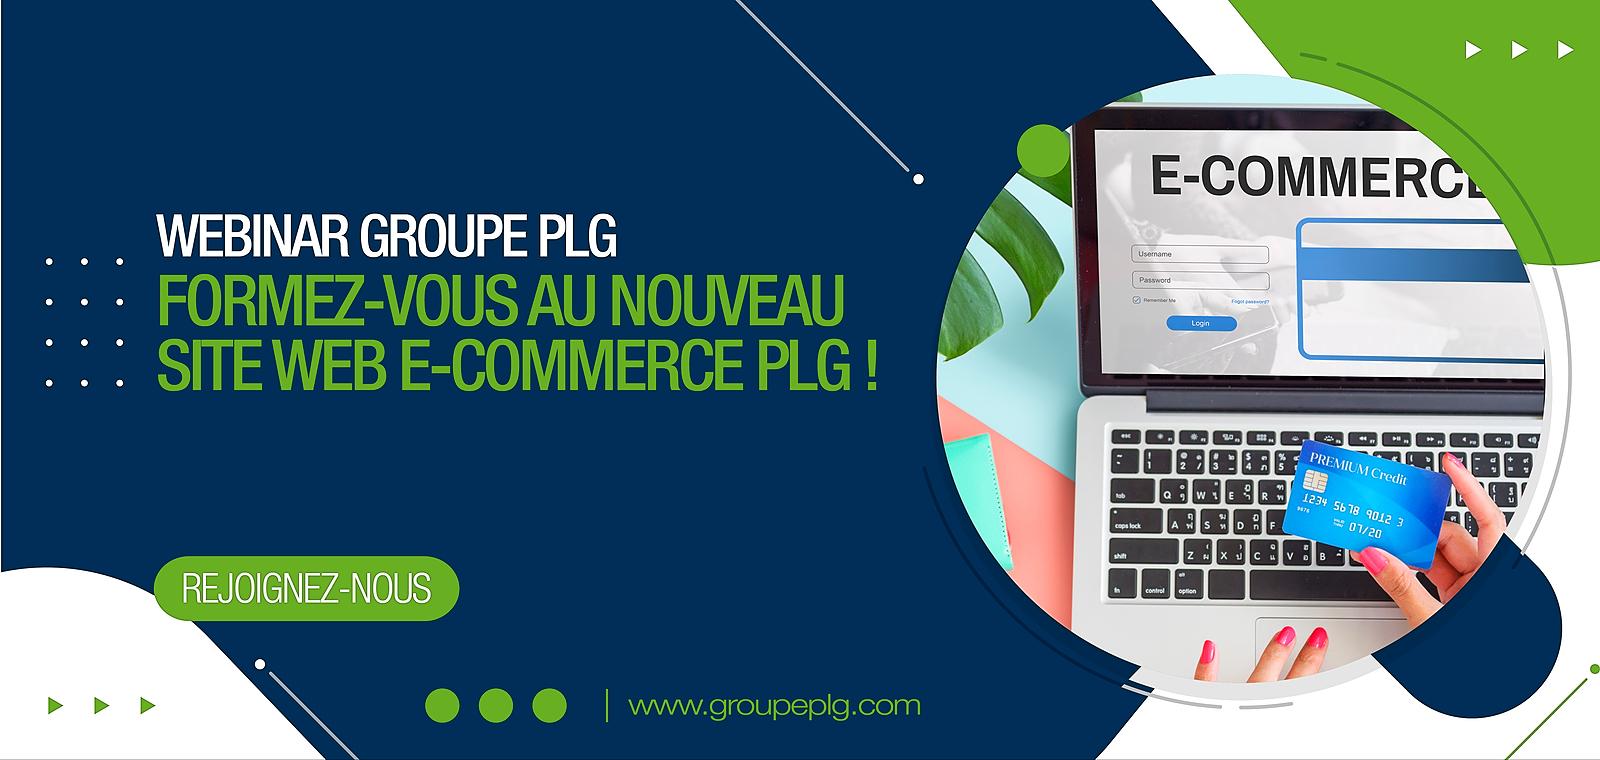 Formez-vous au nouveau Site E-Commerce PLG !